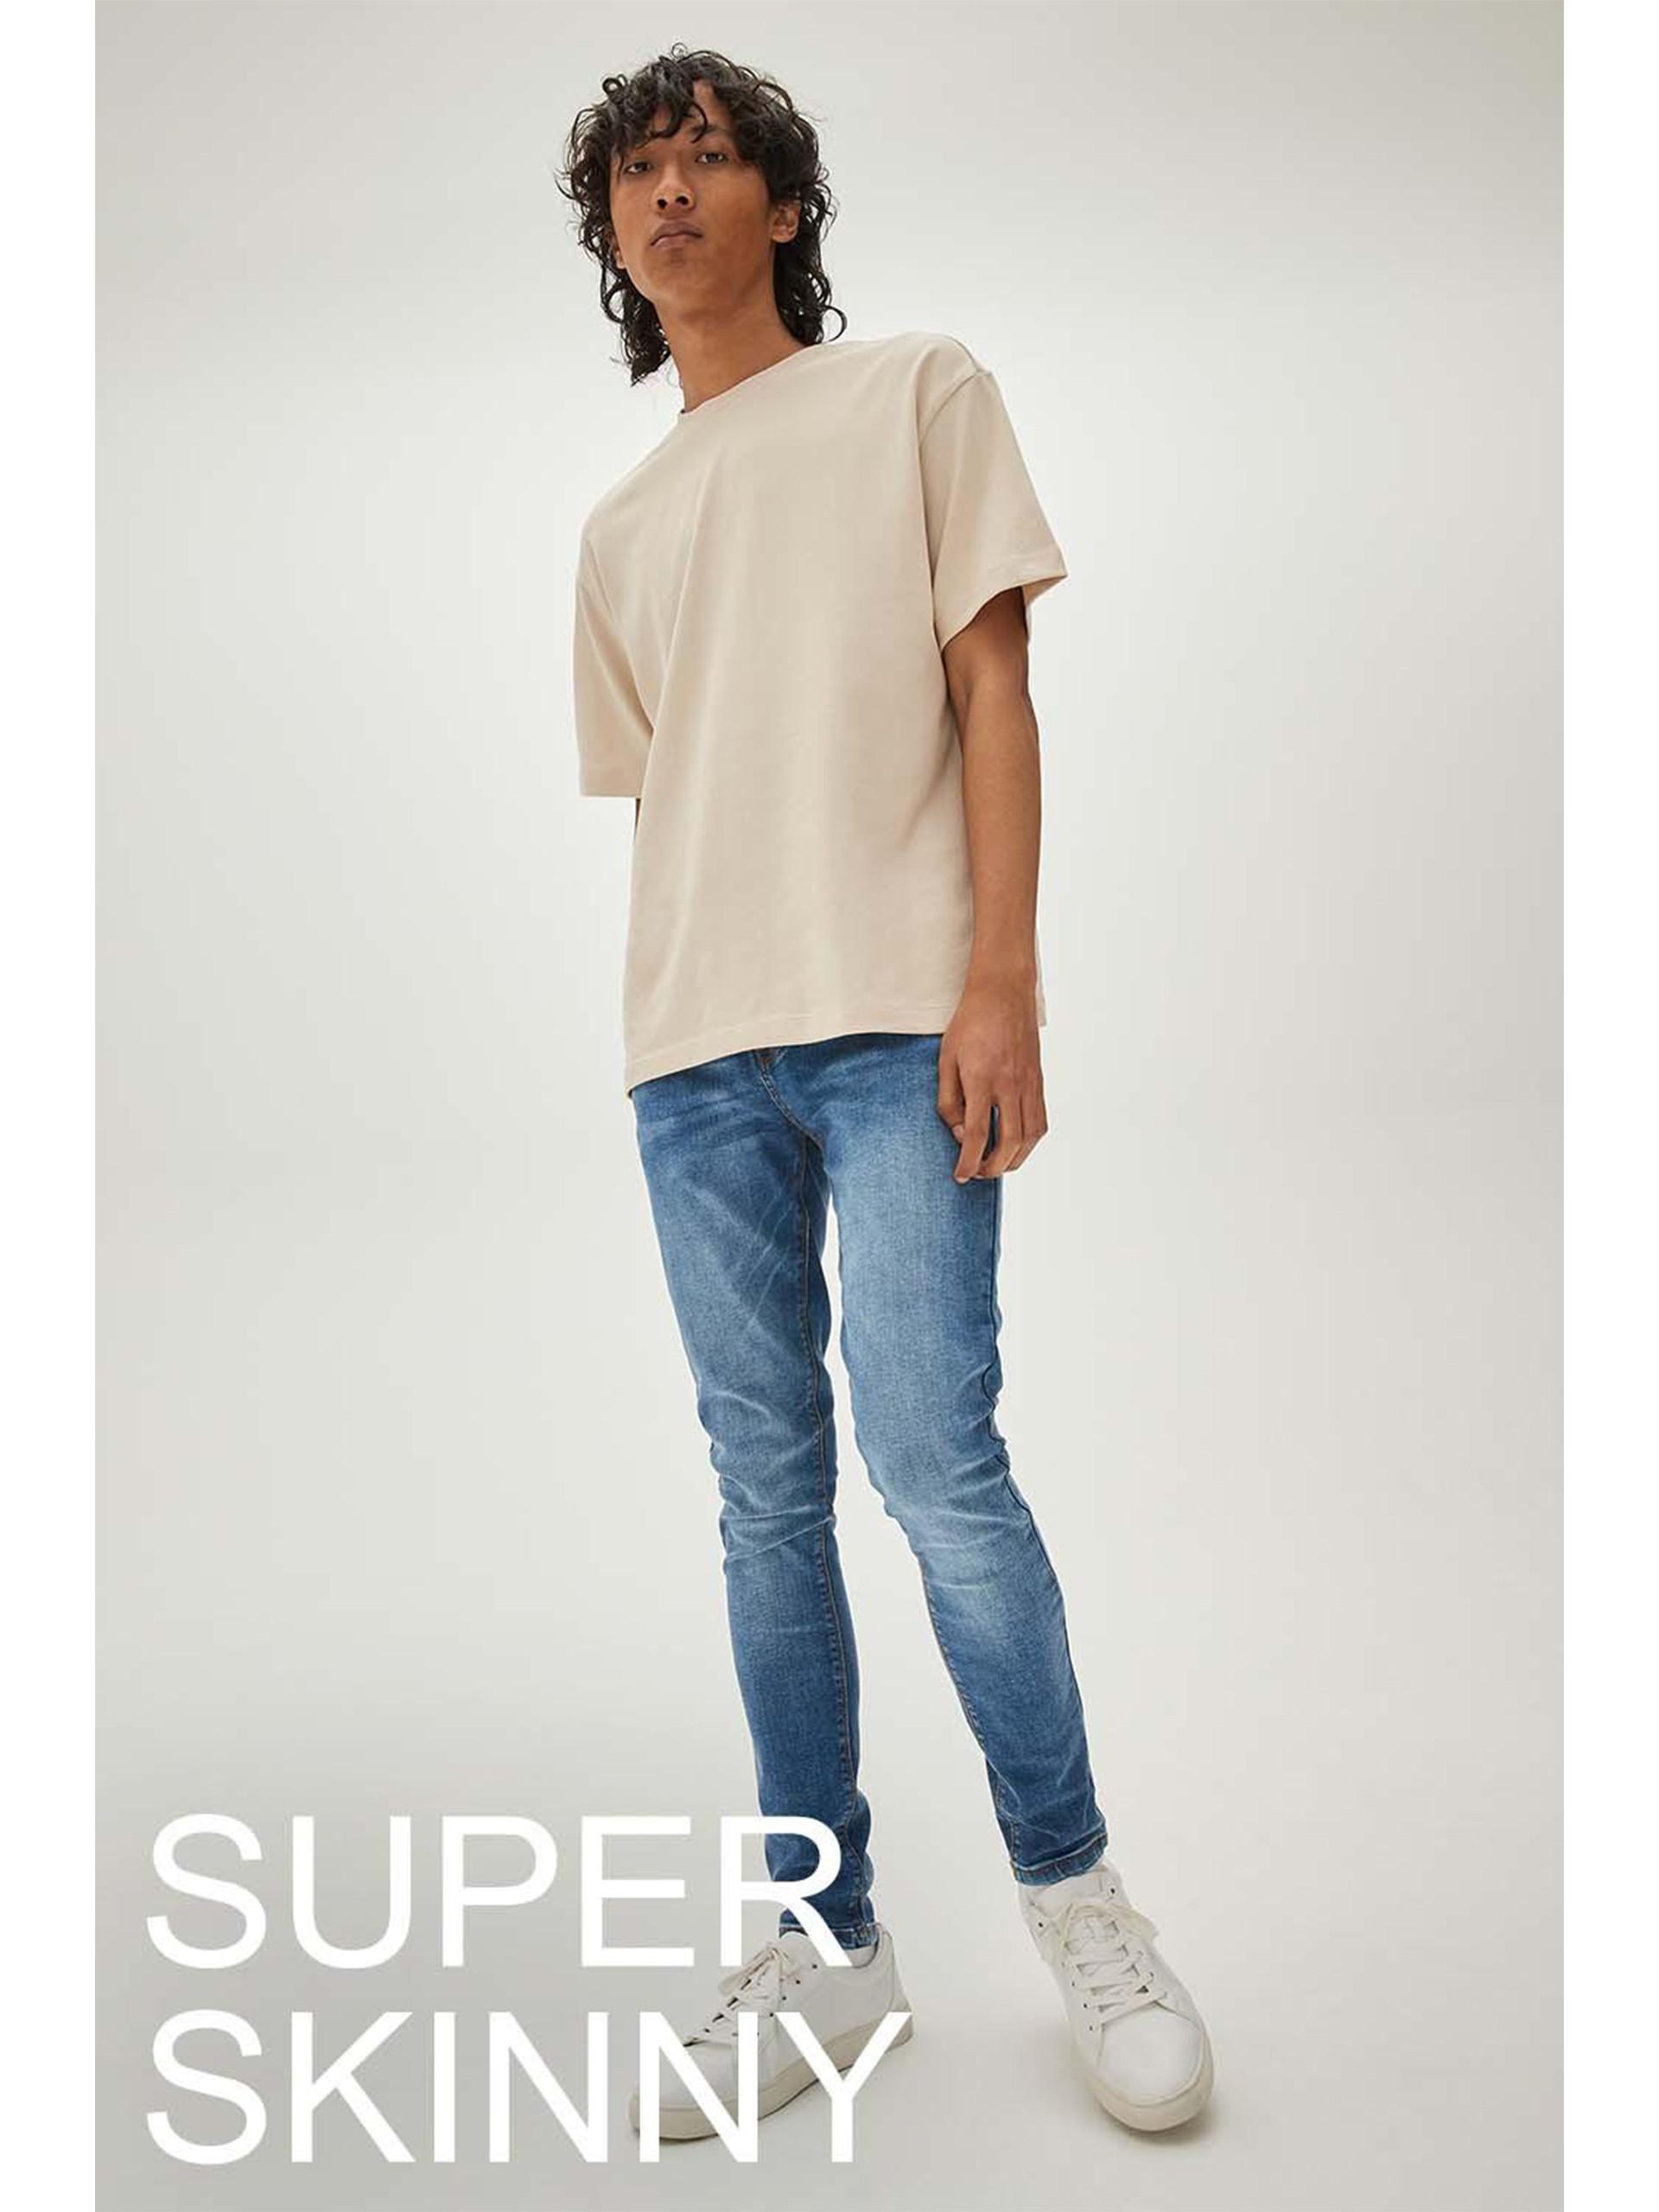 Model trägt blaue Skinny Jeans und T-Shirt im Oversized-Look in Steingrau